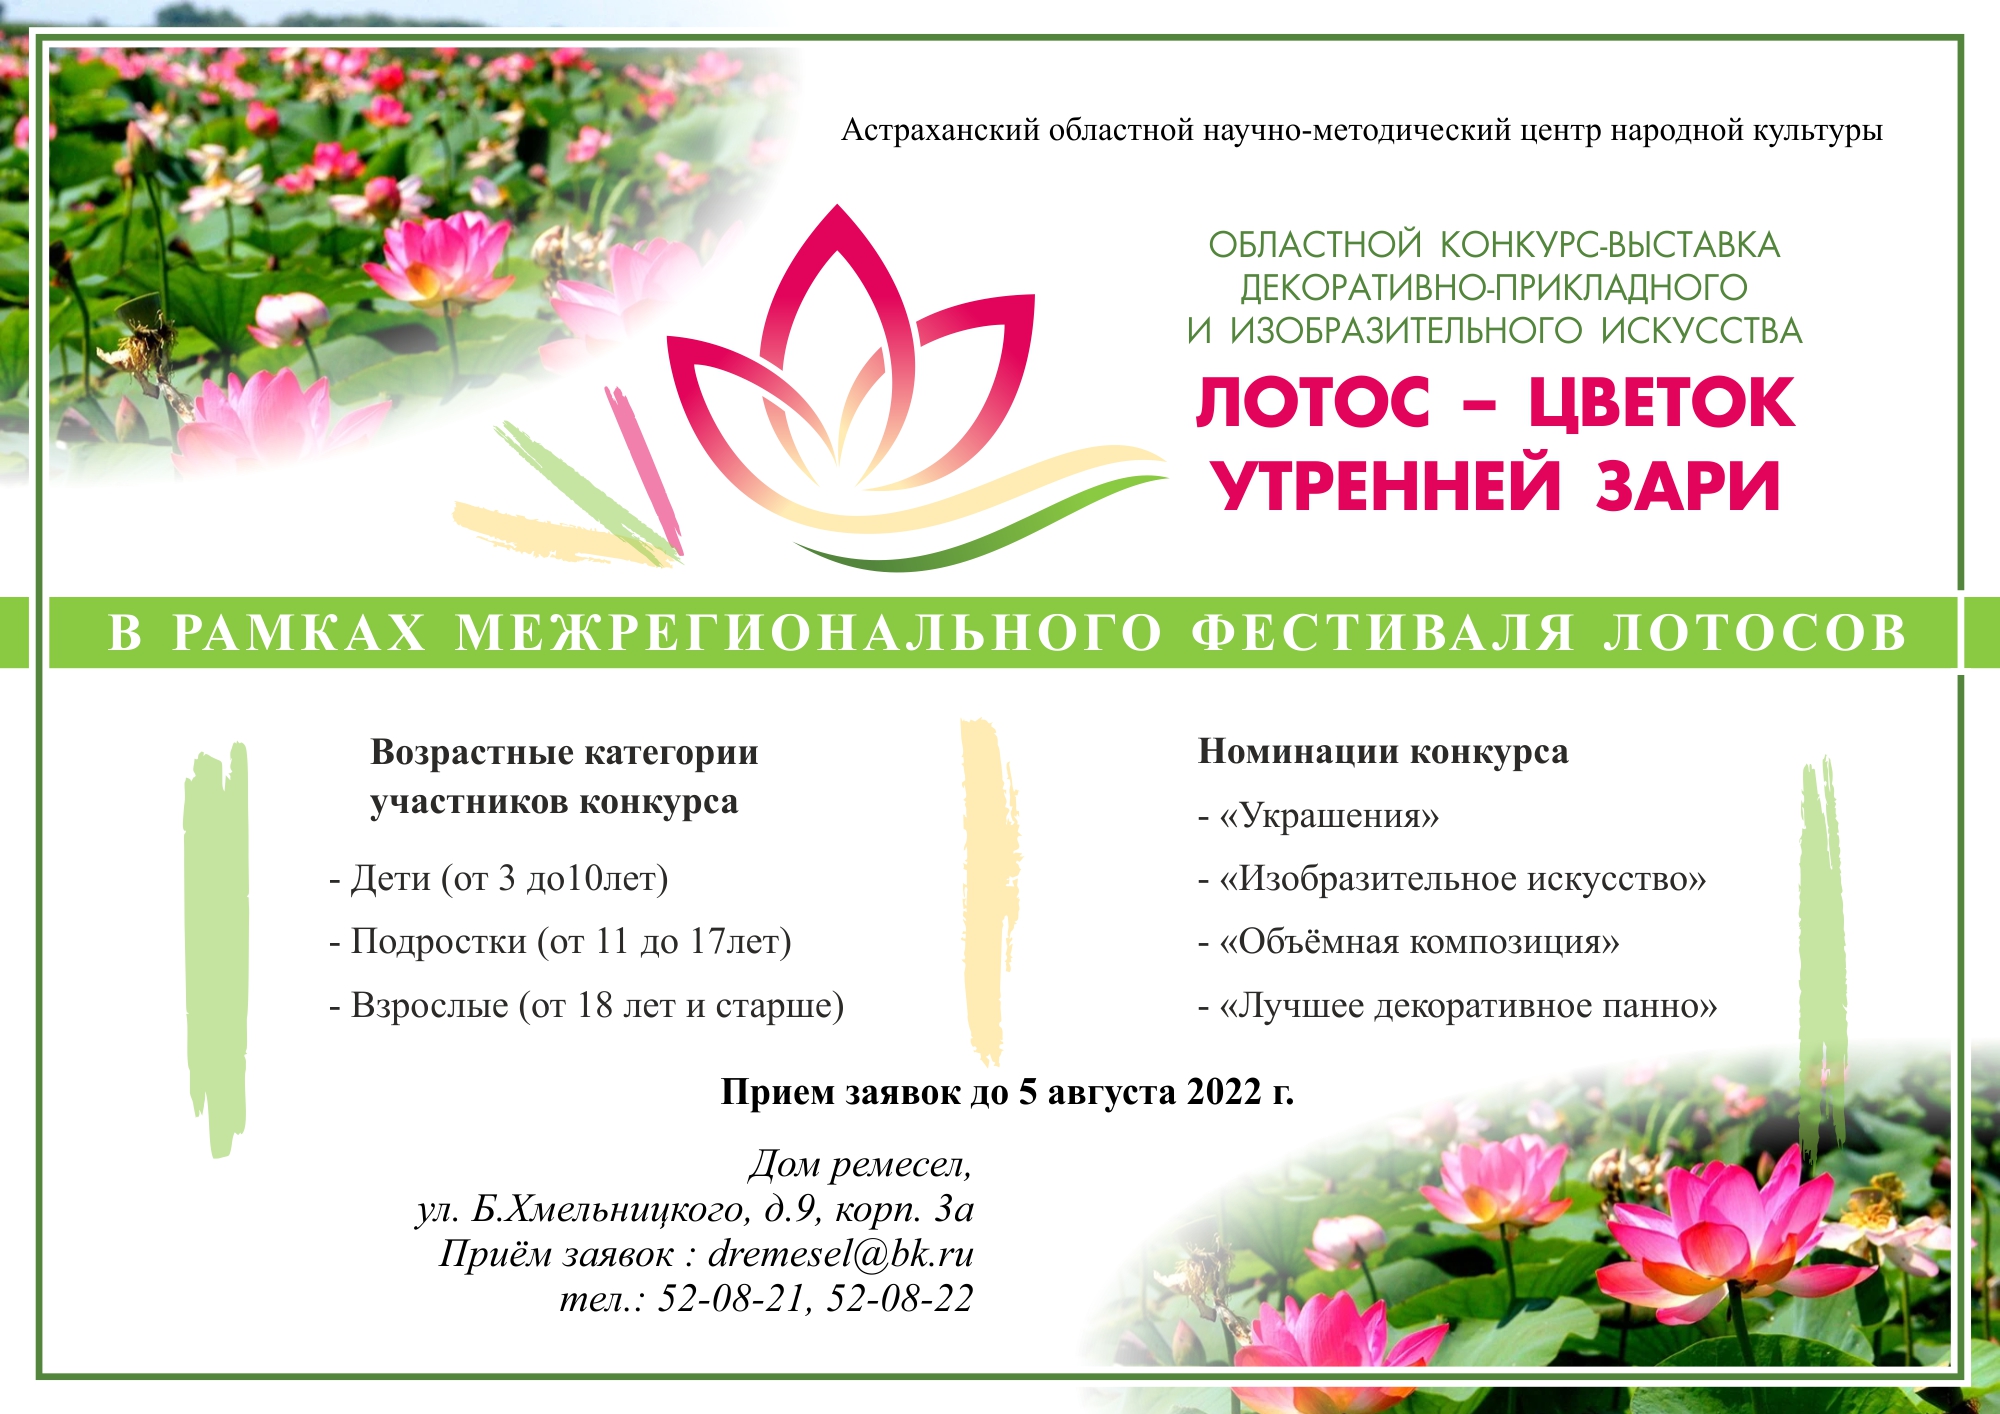 Стартовал прием заявок на участие в конкурсе «Лотос – цветок утренней зари»